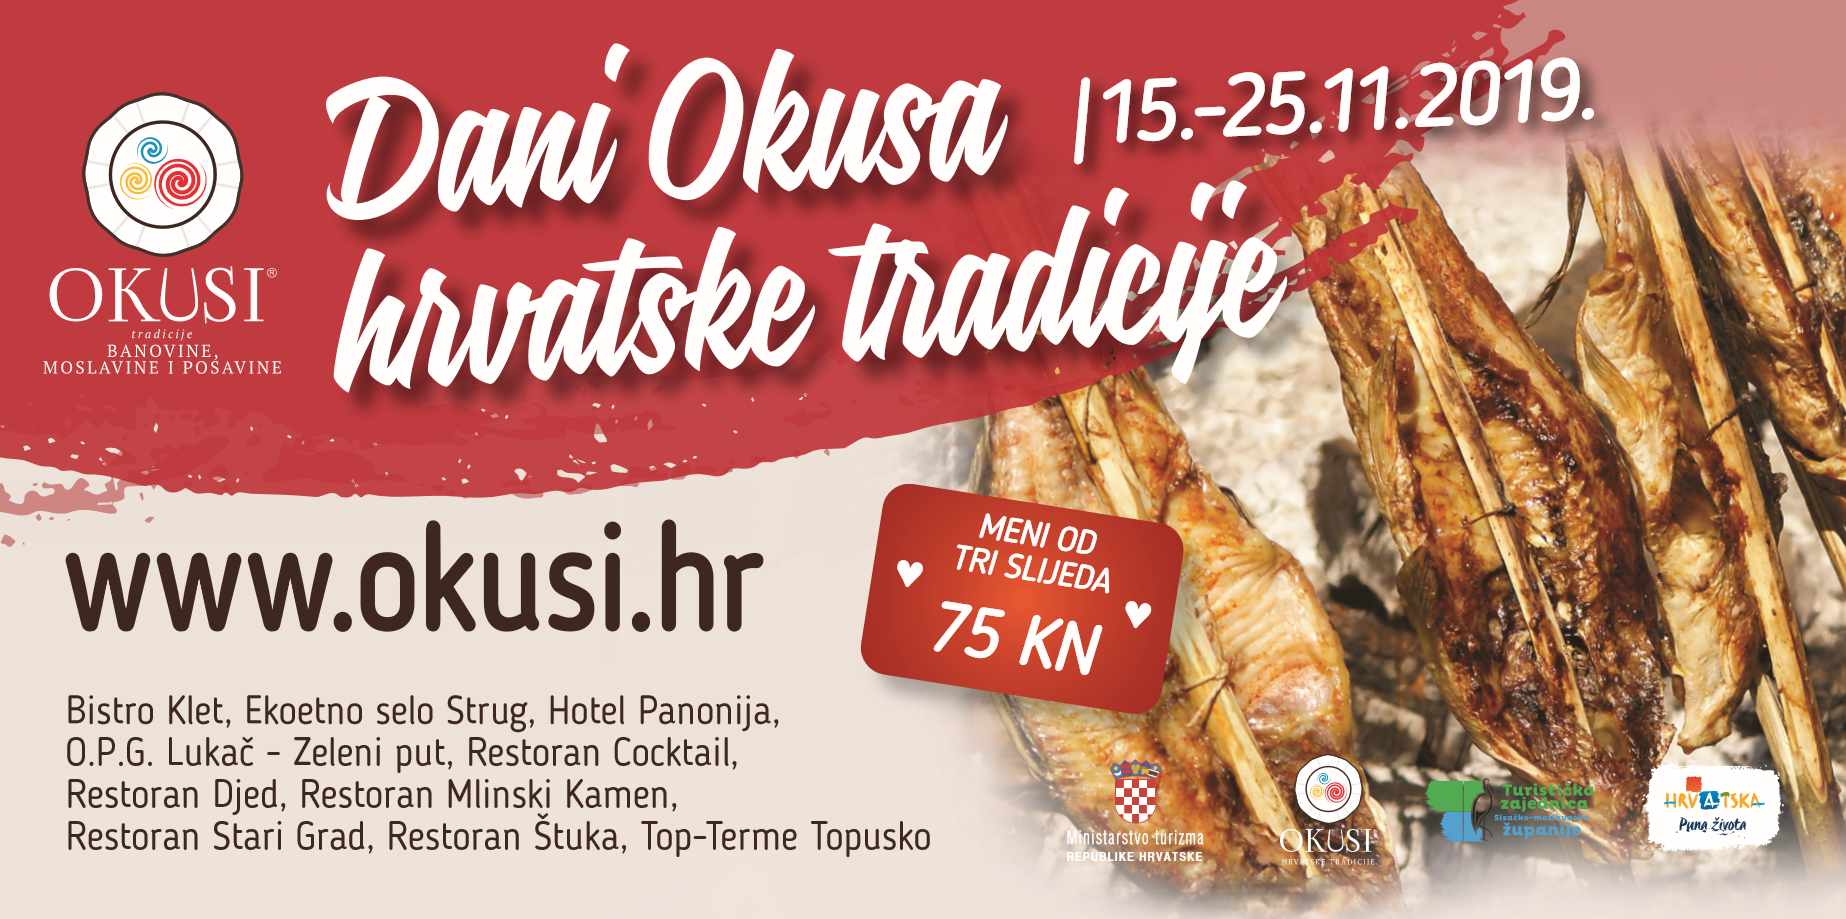 You are currently viewing 1.Dani Okusa hrvatske tradicije u sisačkim restoranima